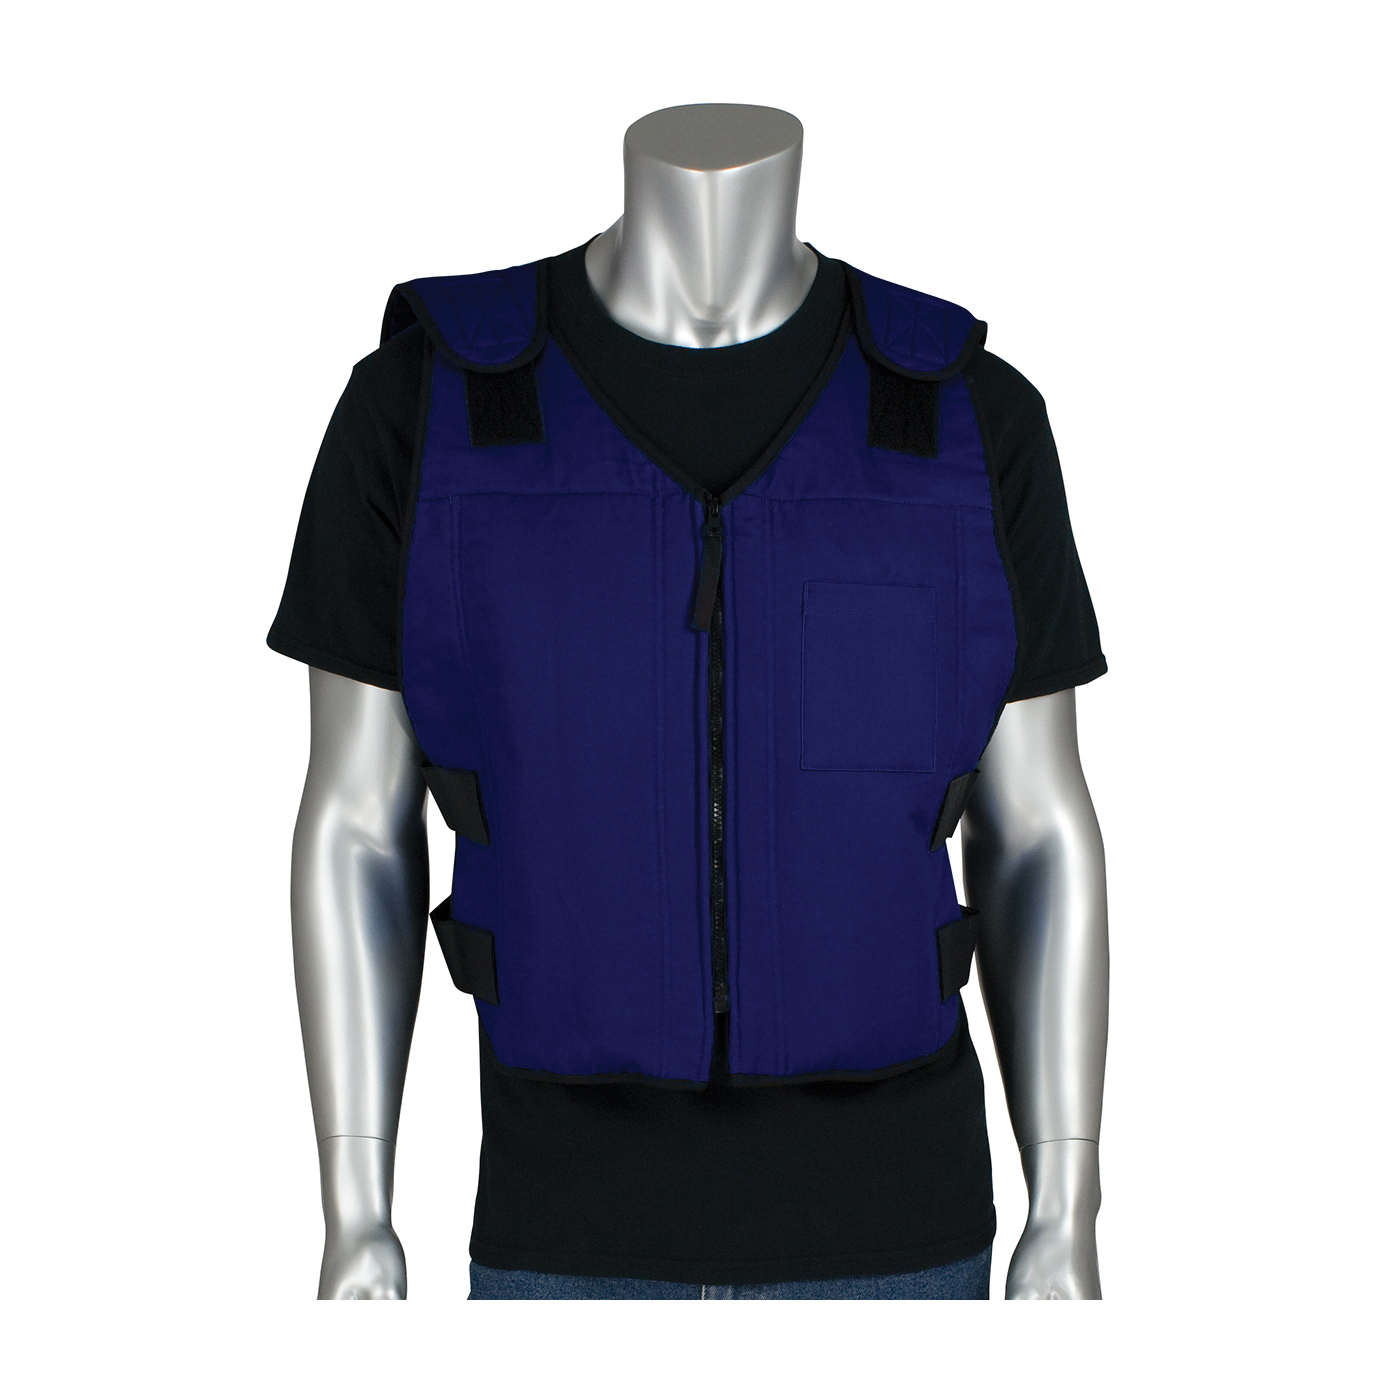 PIP® 390-EZFRPC-L/XL EZ-Cool® Active Fit Premium FR Phase Change Cooling Vest With Insulated Cooler Bag, L/XL Size, Zipper Closure, Cotton/Nylon, Navy Blue